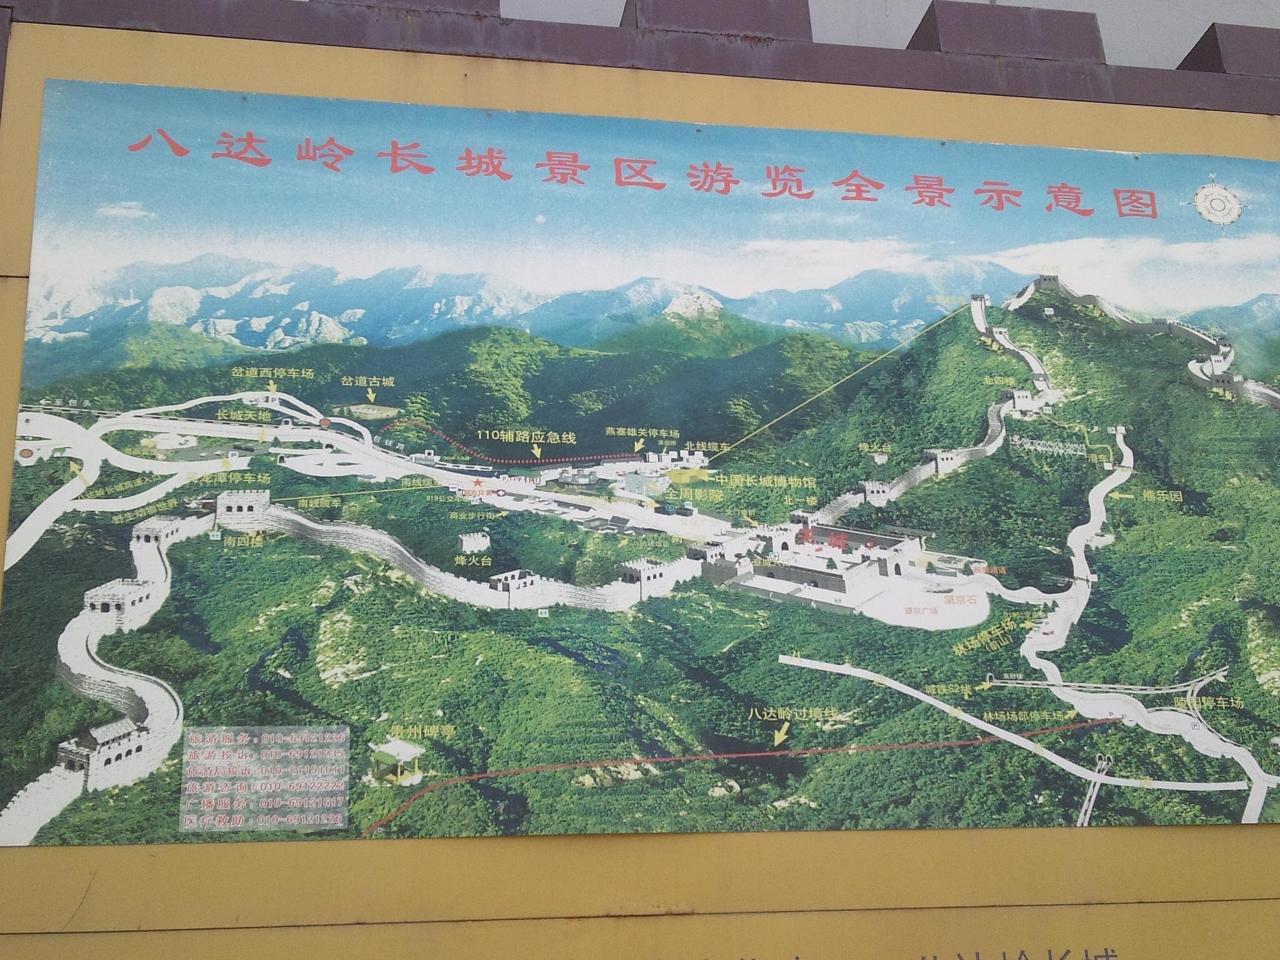 列車で万里の長城行ってきました 北京 中国 の旅行記 ブログ By Harahalaさん フォートラベル